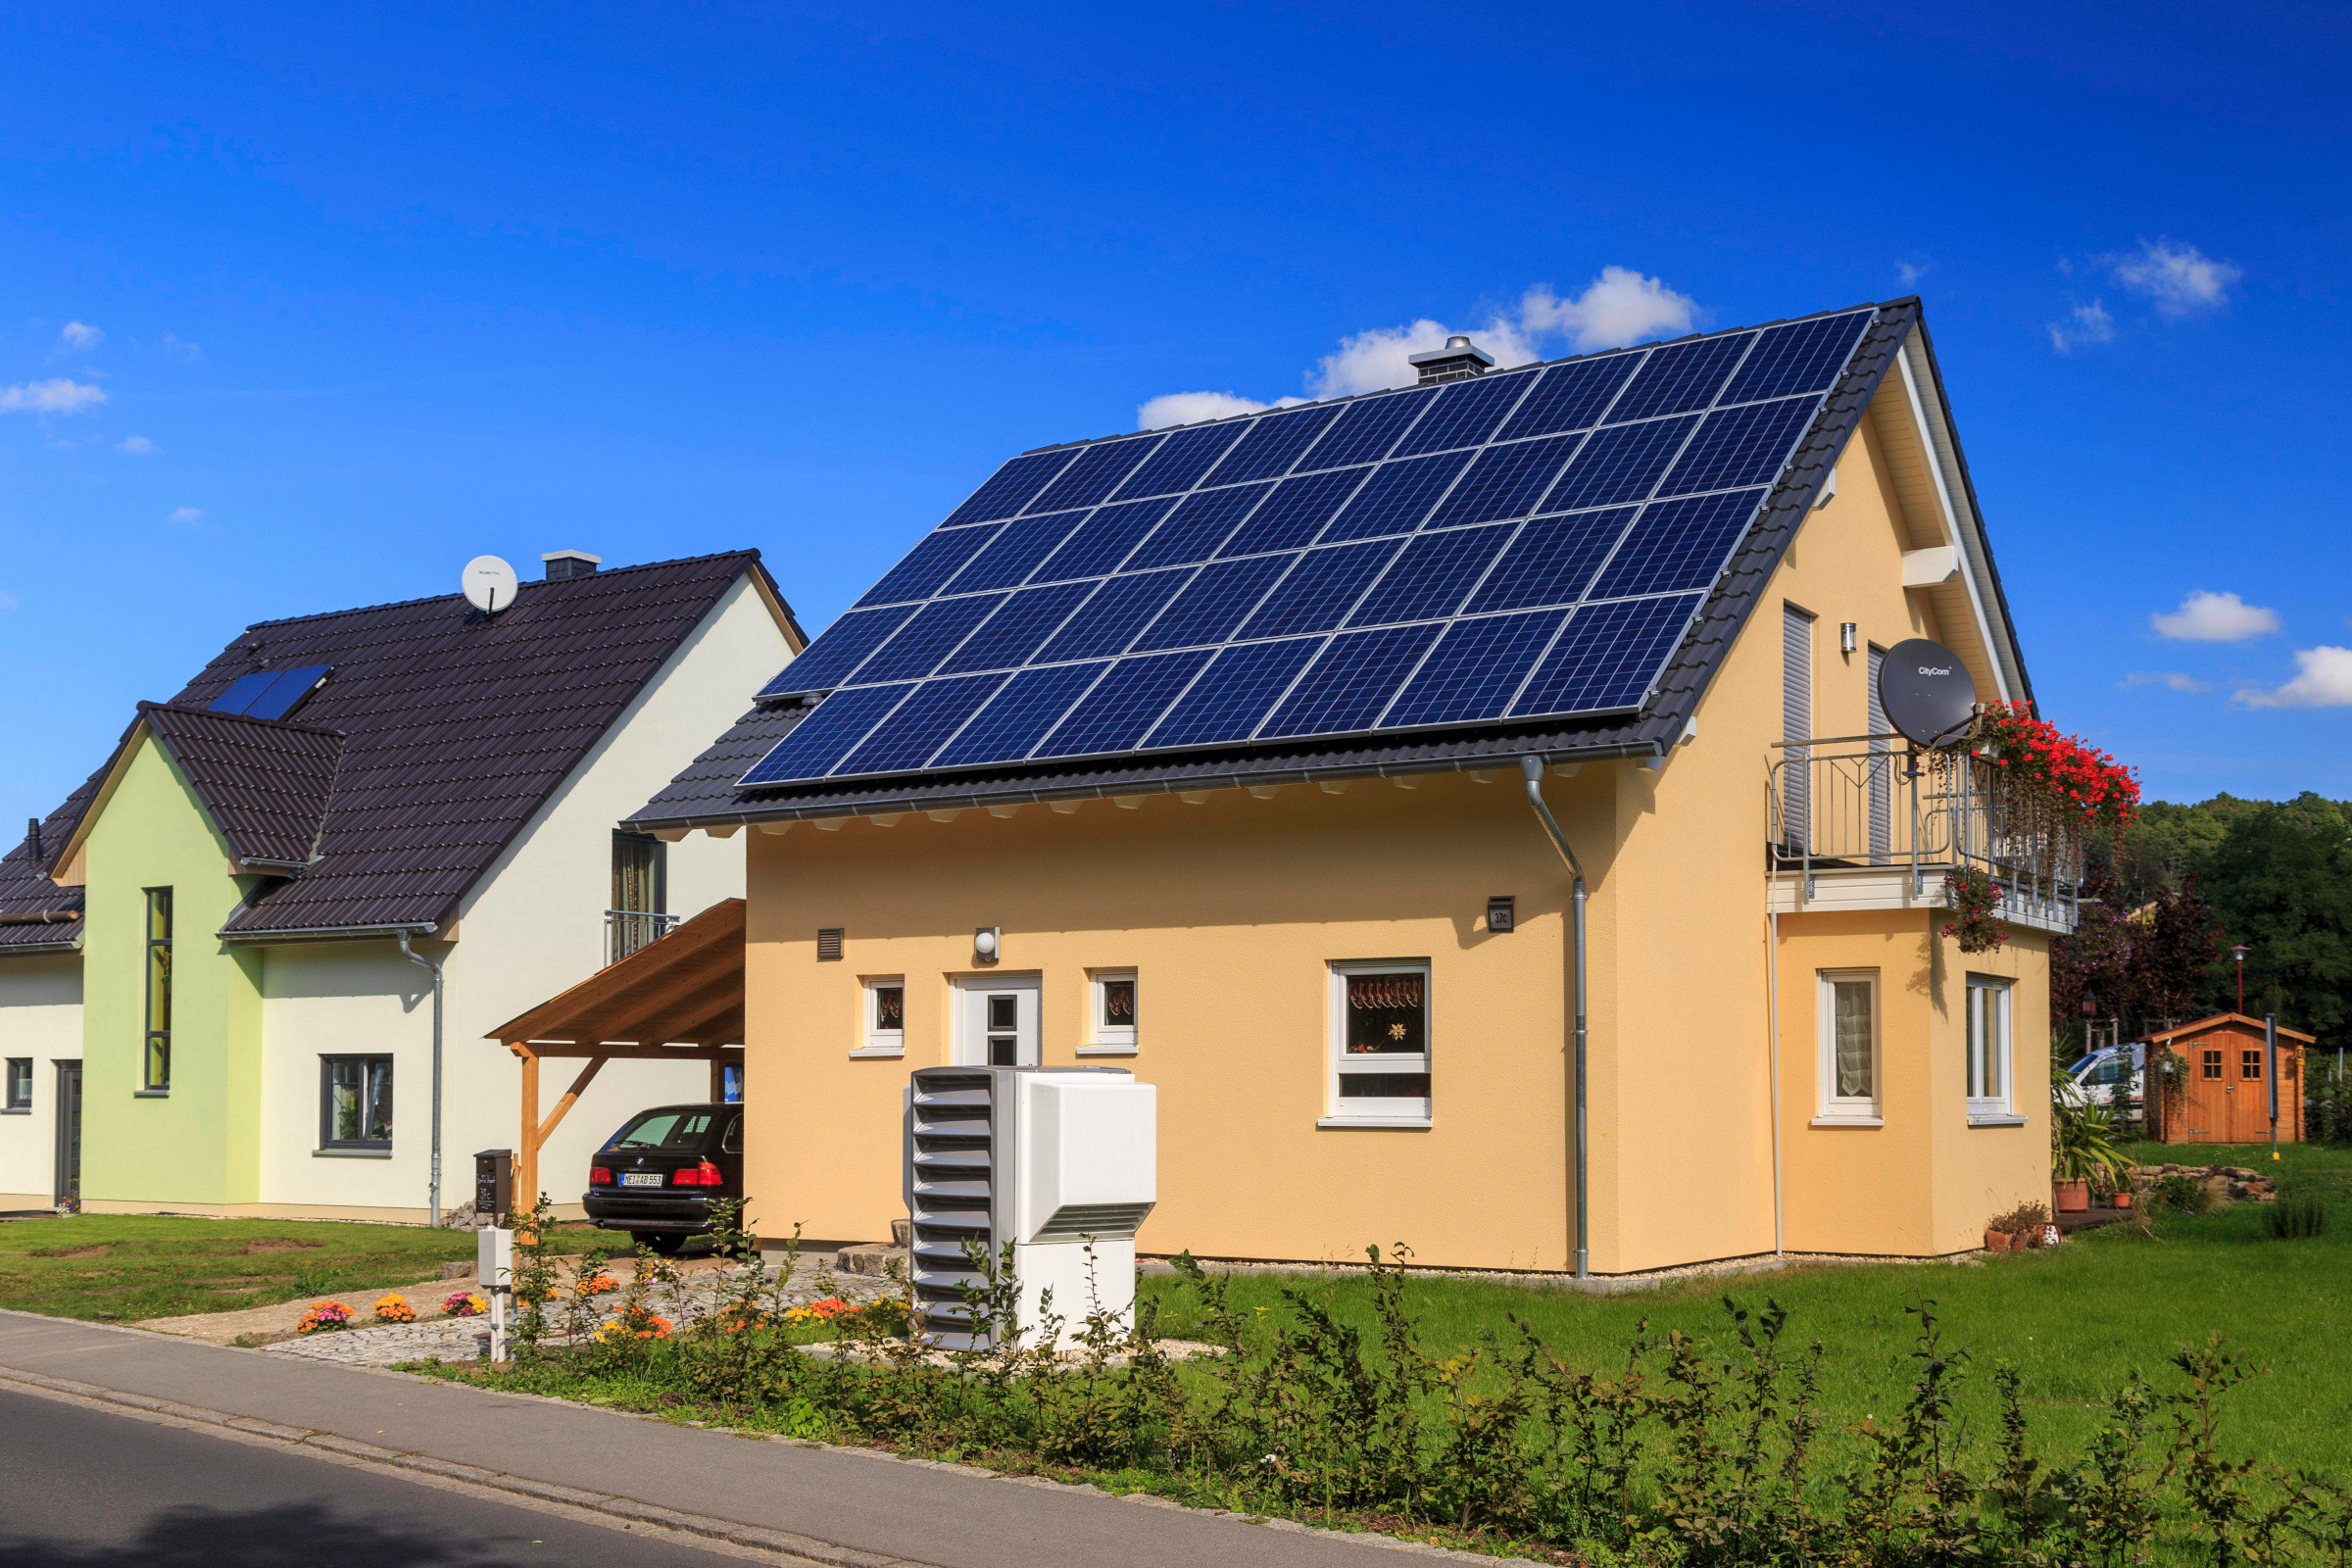 Photovoltaik: DARUM lohnt sich jetzt die Solaranlage mehr denn je 